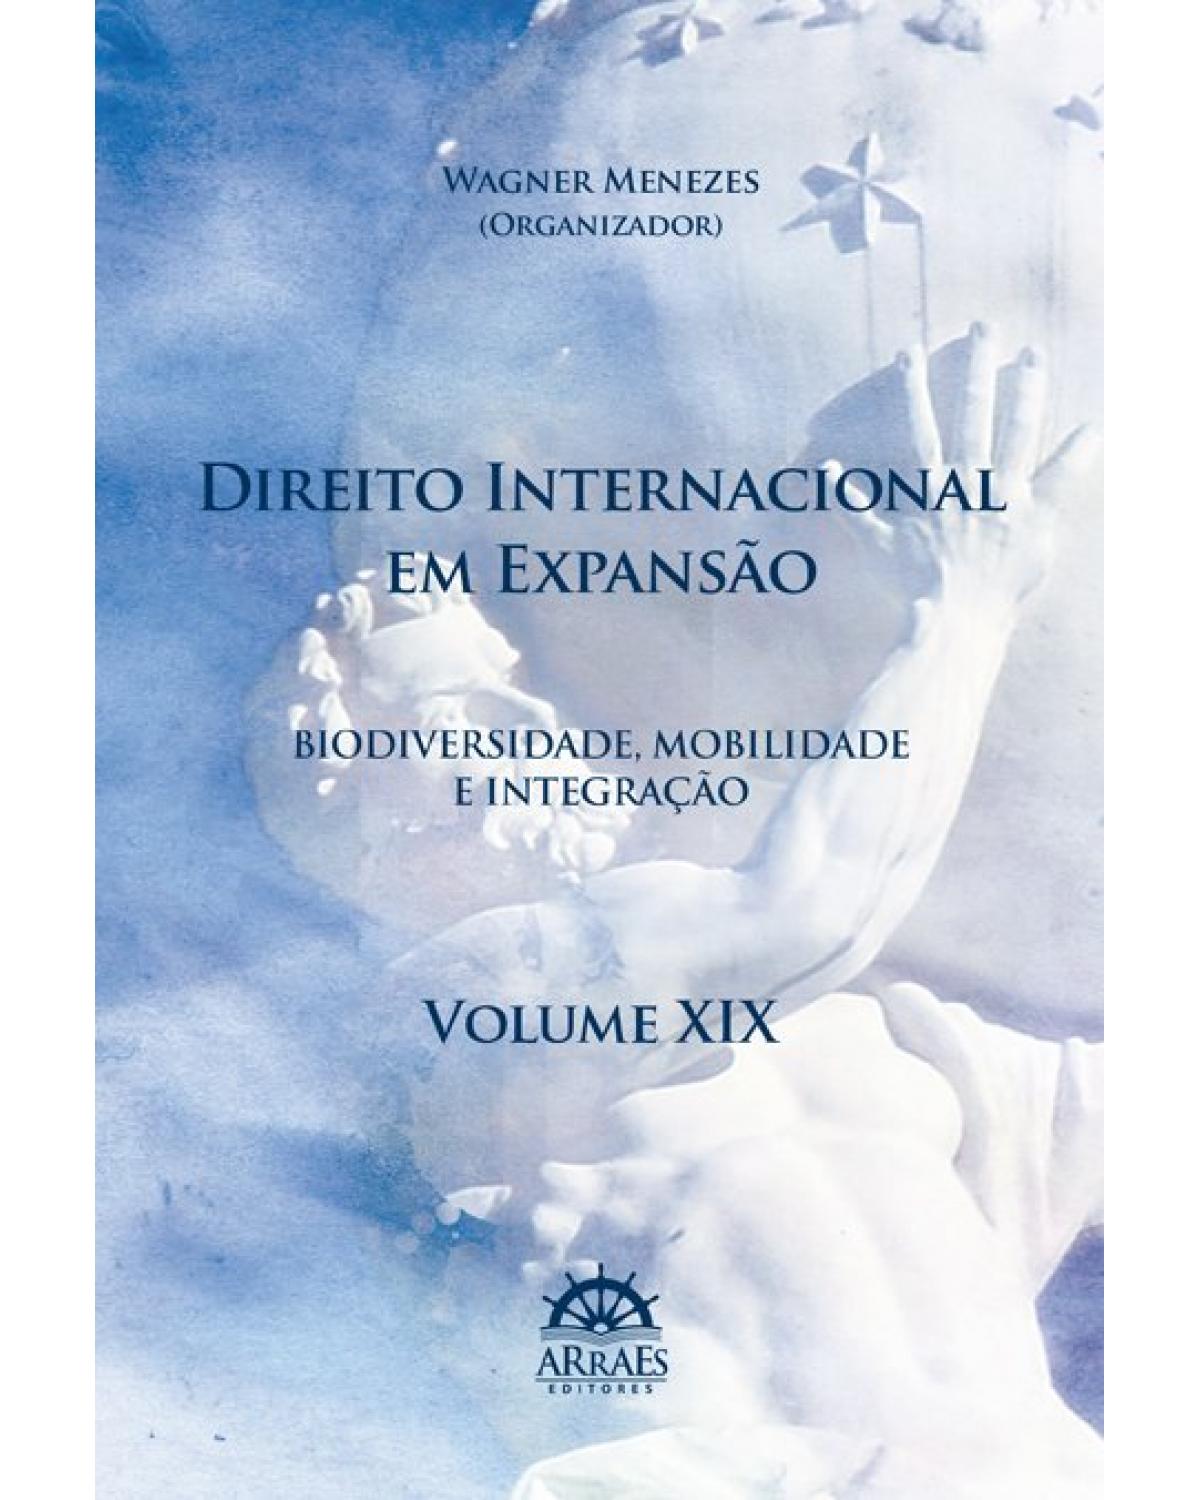 Direito internacional em expansão - Biodiversidade, mobilidade e integração - Volume XIX | 2020